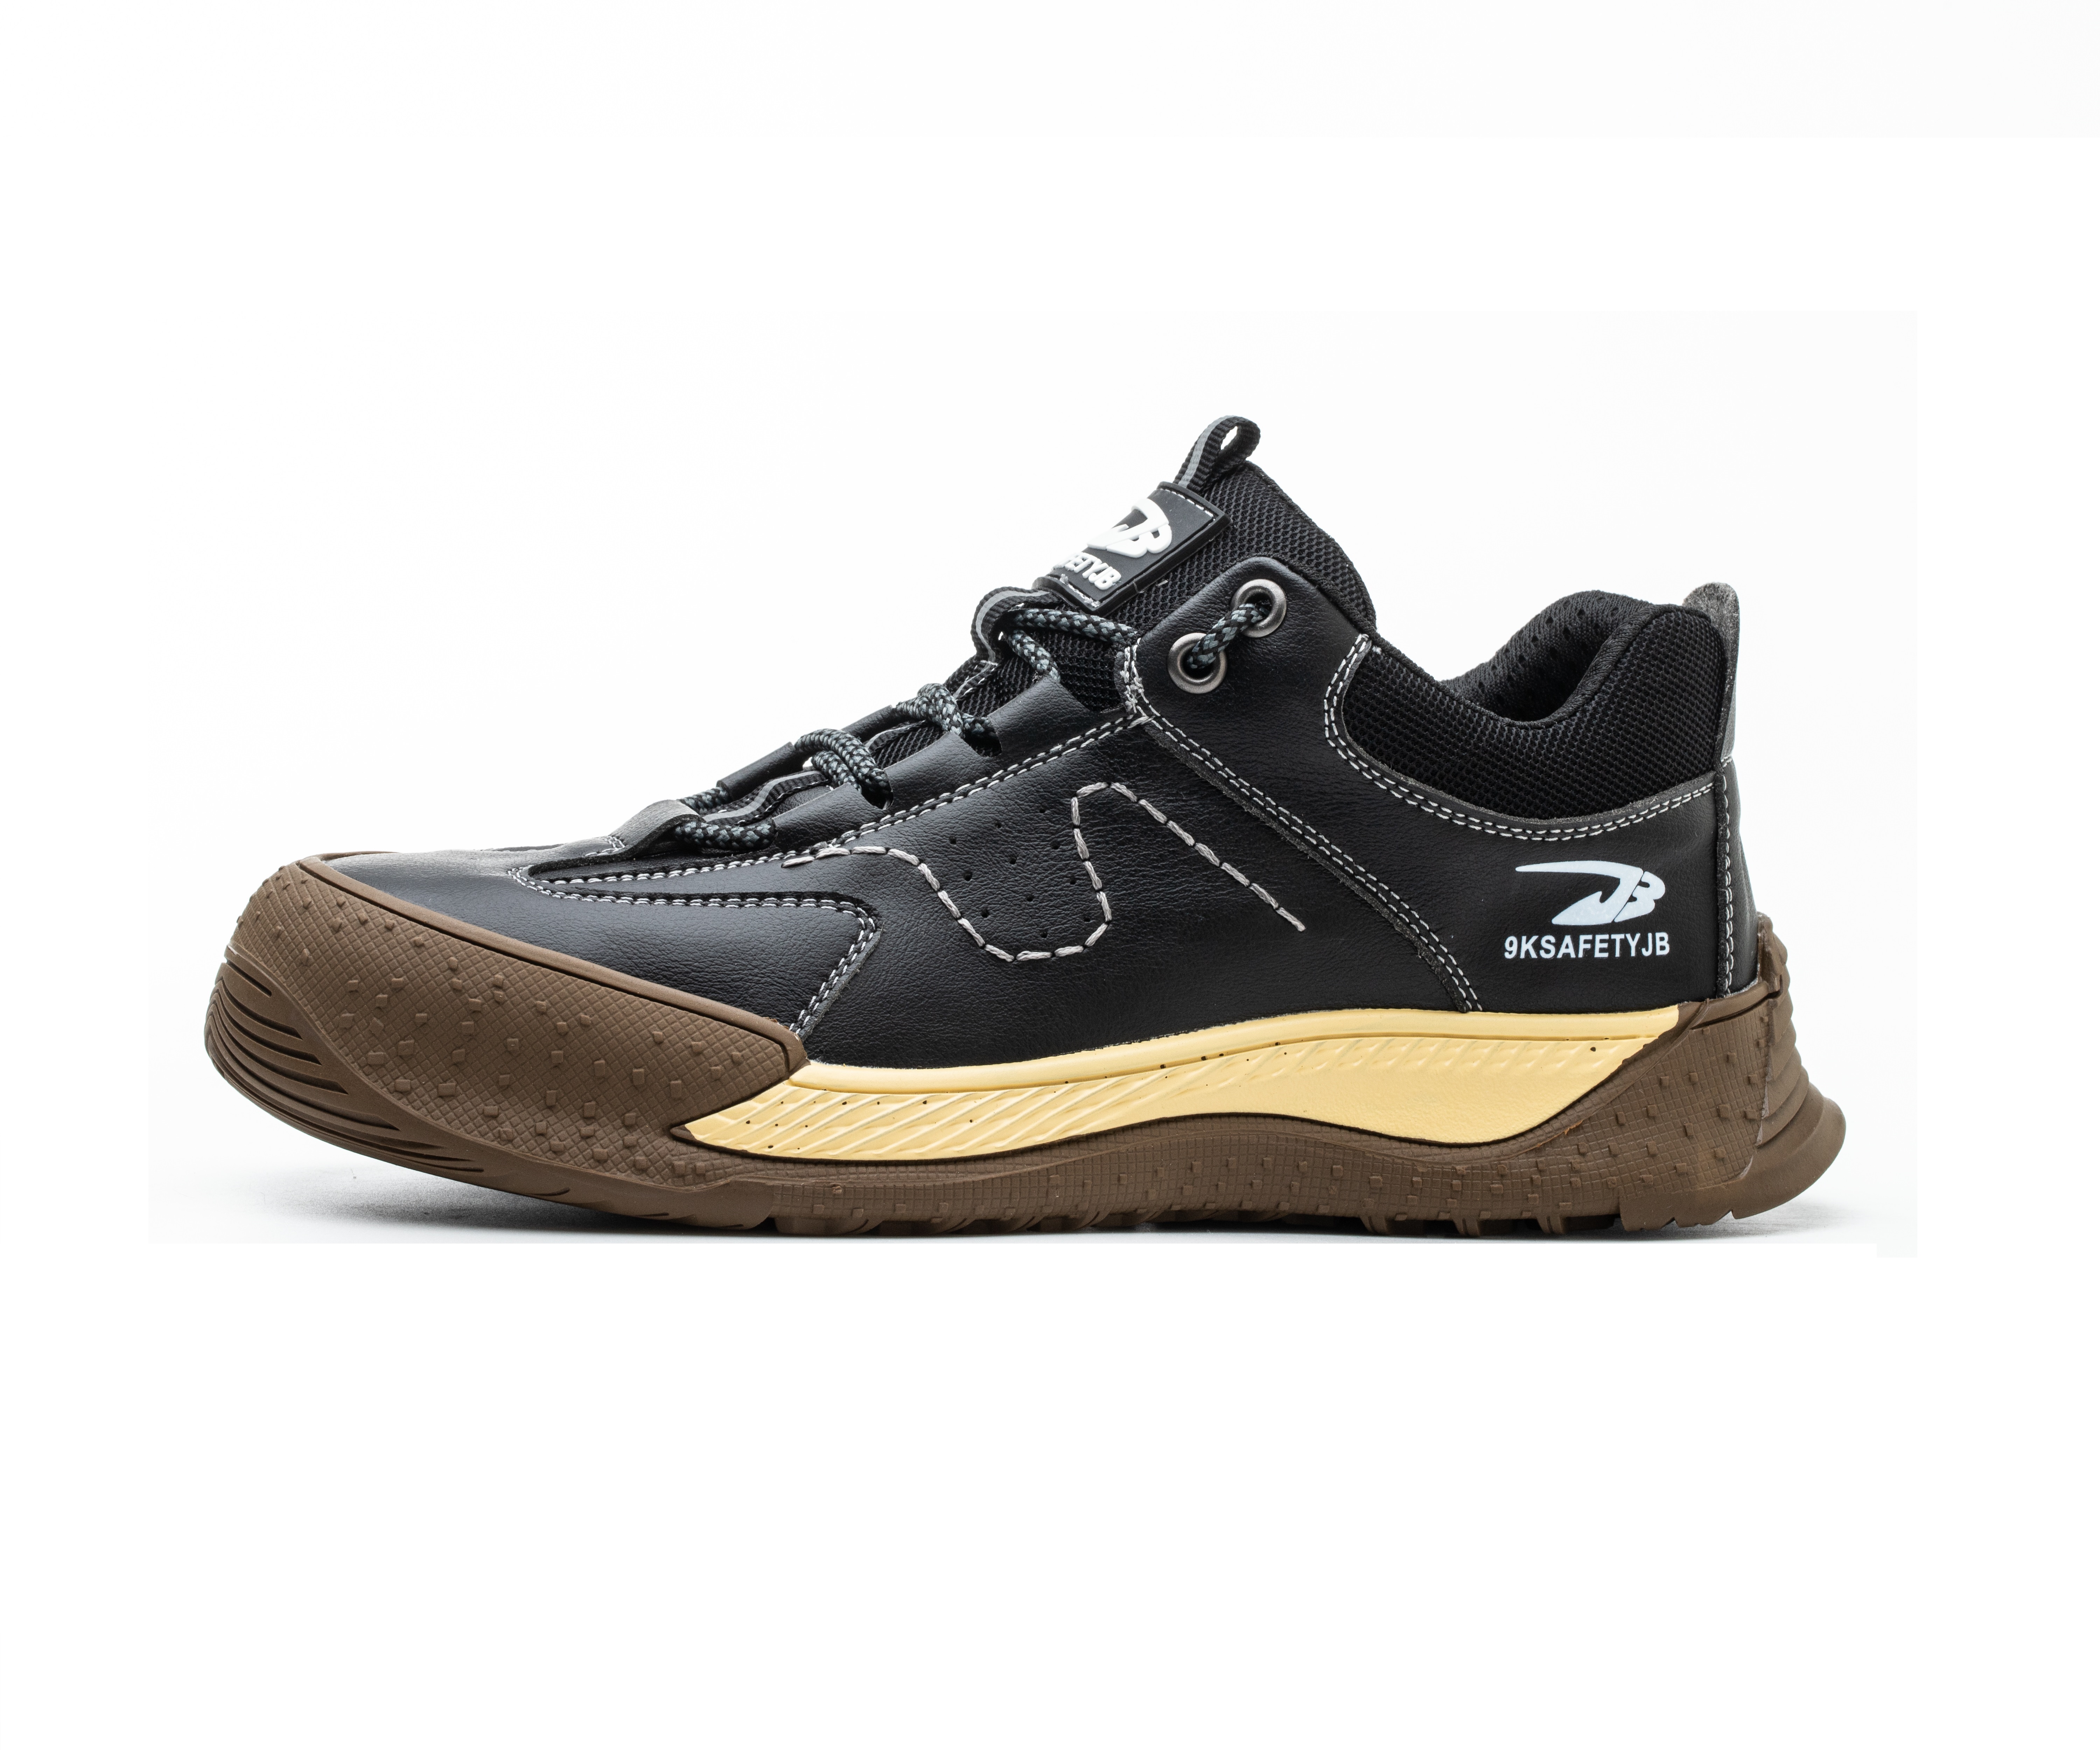 Men's Steel Toe Safety Shoes - Model 676 SafeAlex.com